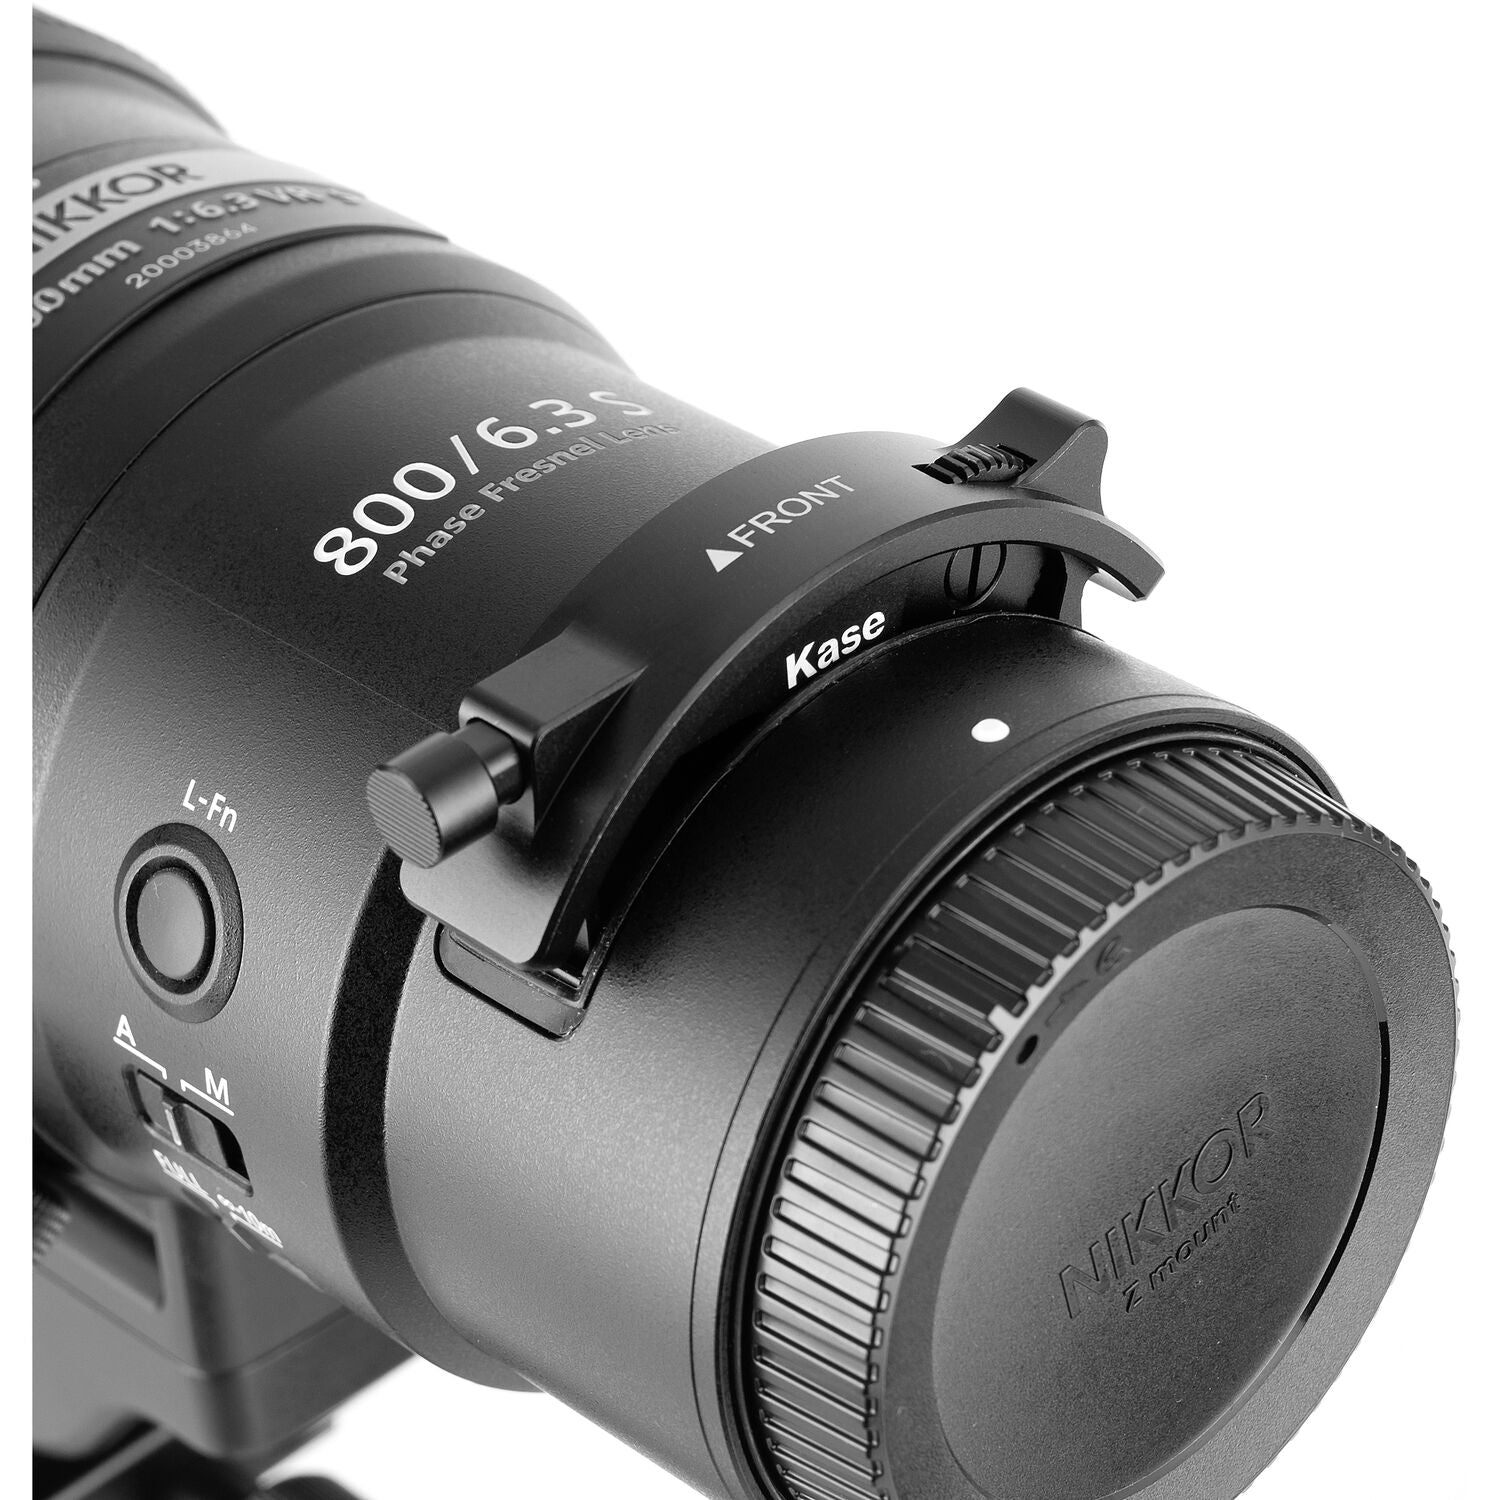 Kase Tele Drop-In Filter Kit for NIKKOR Z 800mm f/6.3 VR S and Z600mm f/4  TC VR S and Z 400mm f/2.8 TC VR S Lenses (1.5 - 5 Stop Vari ND Filter,